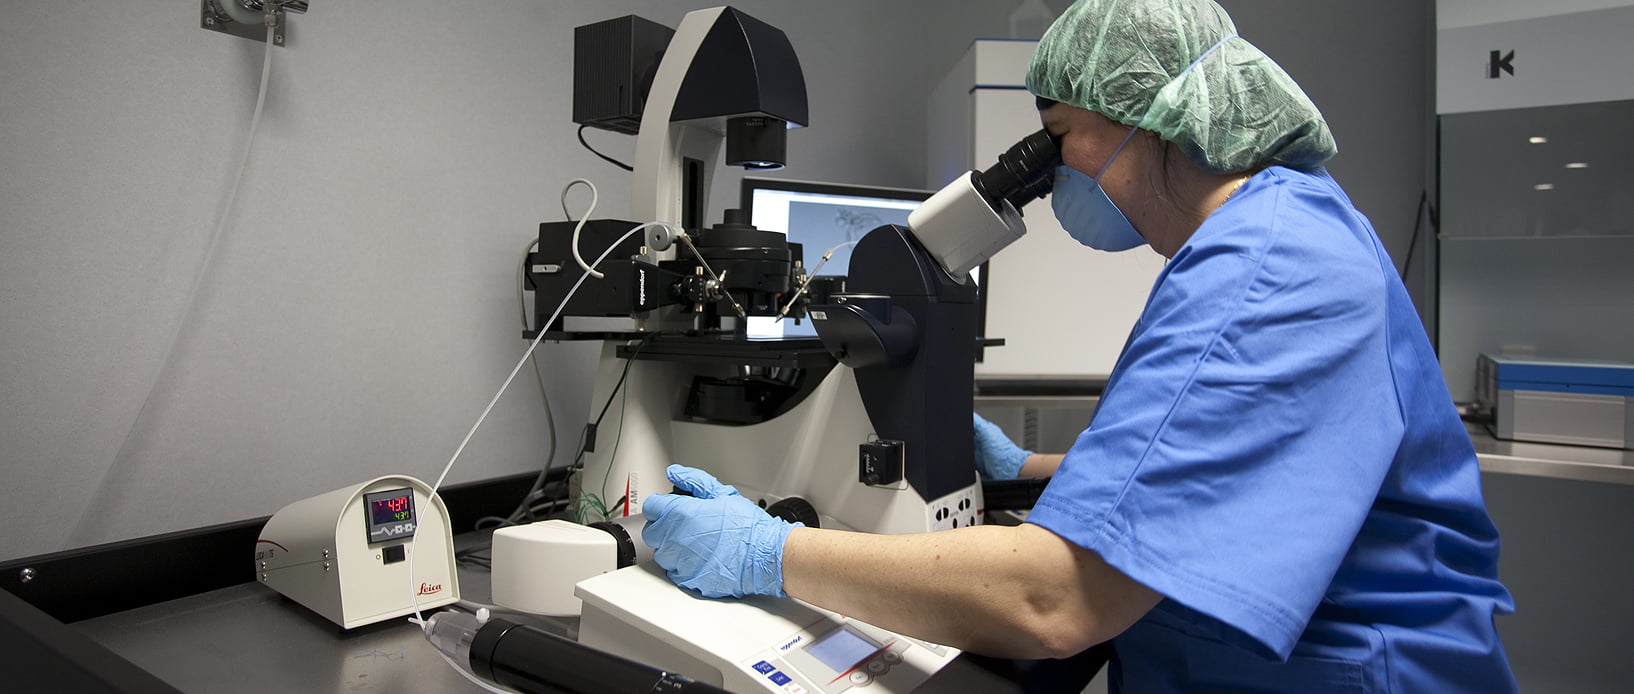 Barcelona IVF in vitro fertilization laboratory